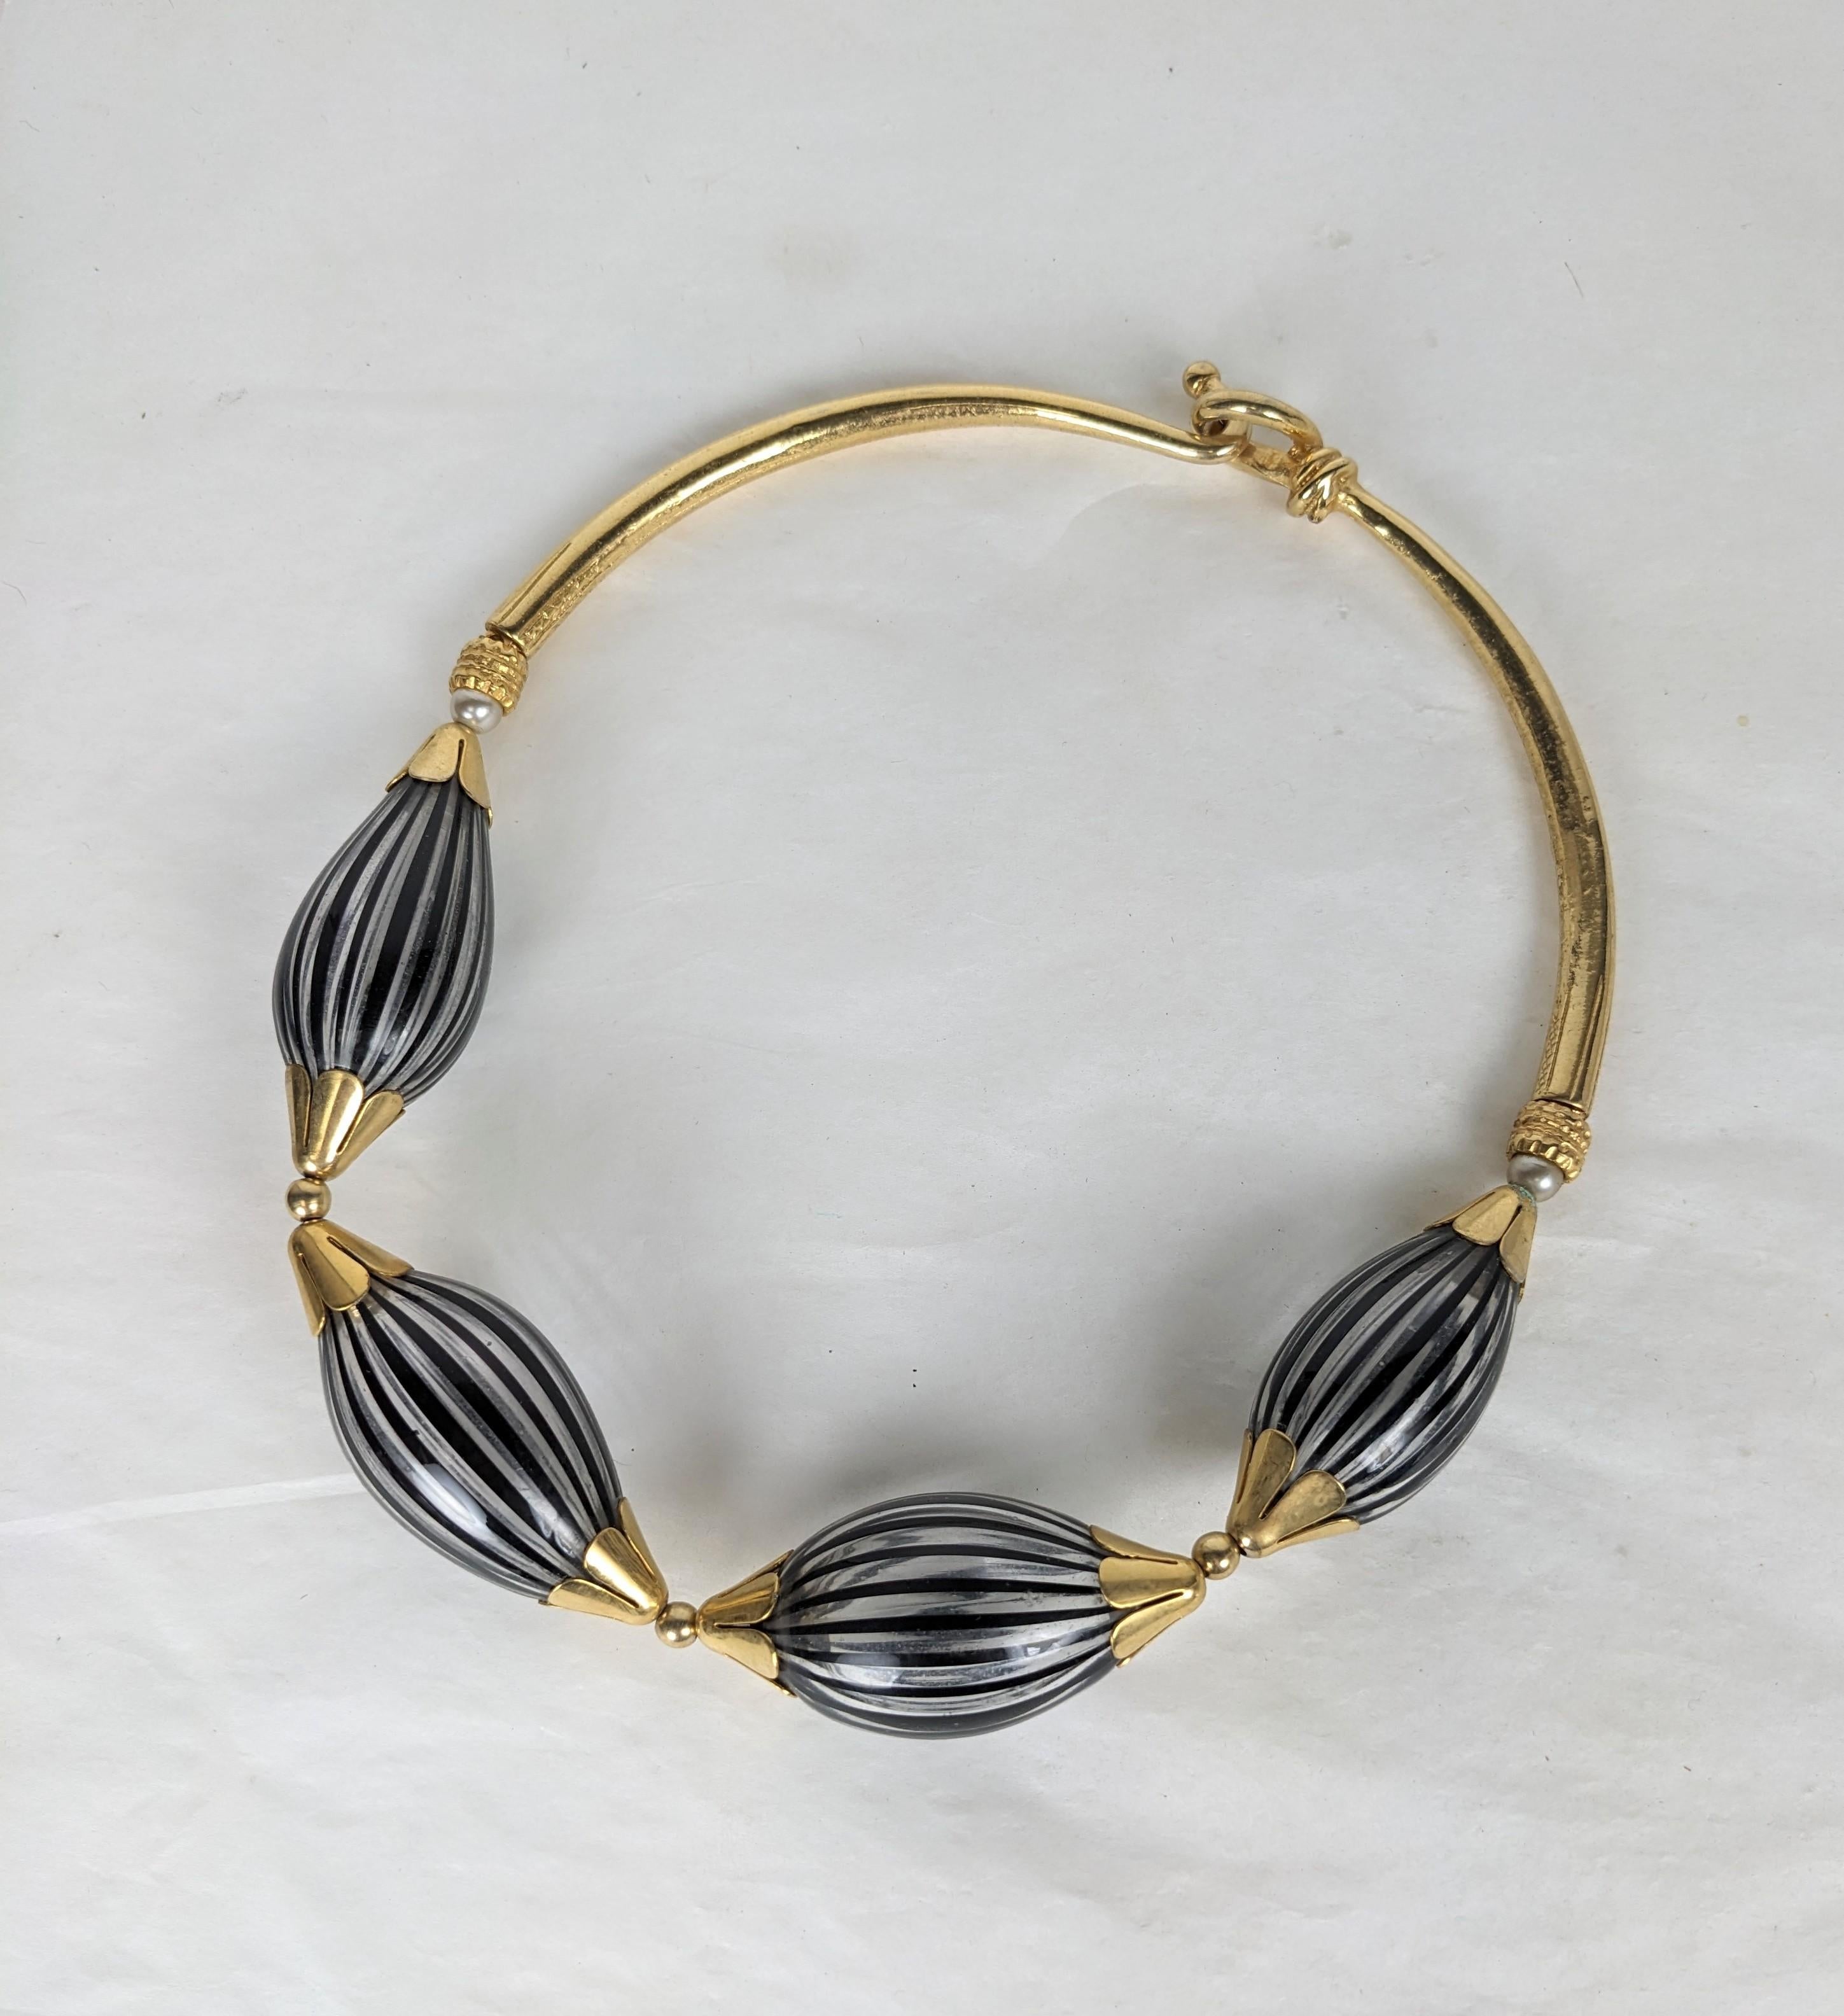 Außergewöhnliche handwerkliche französische Halskette mit venezianischen Glasperlen aus den 1980er Jahren. Große mundgeblasene Glasperlen mit schwarzen und weißen Streifen enden in vergoldeten Blumenkappen und einem harten Halsbandverschluss auf der